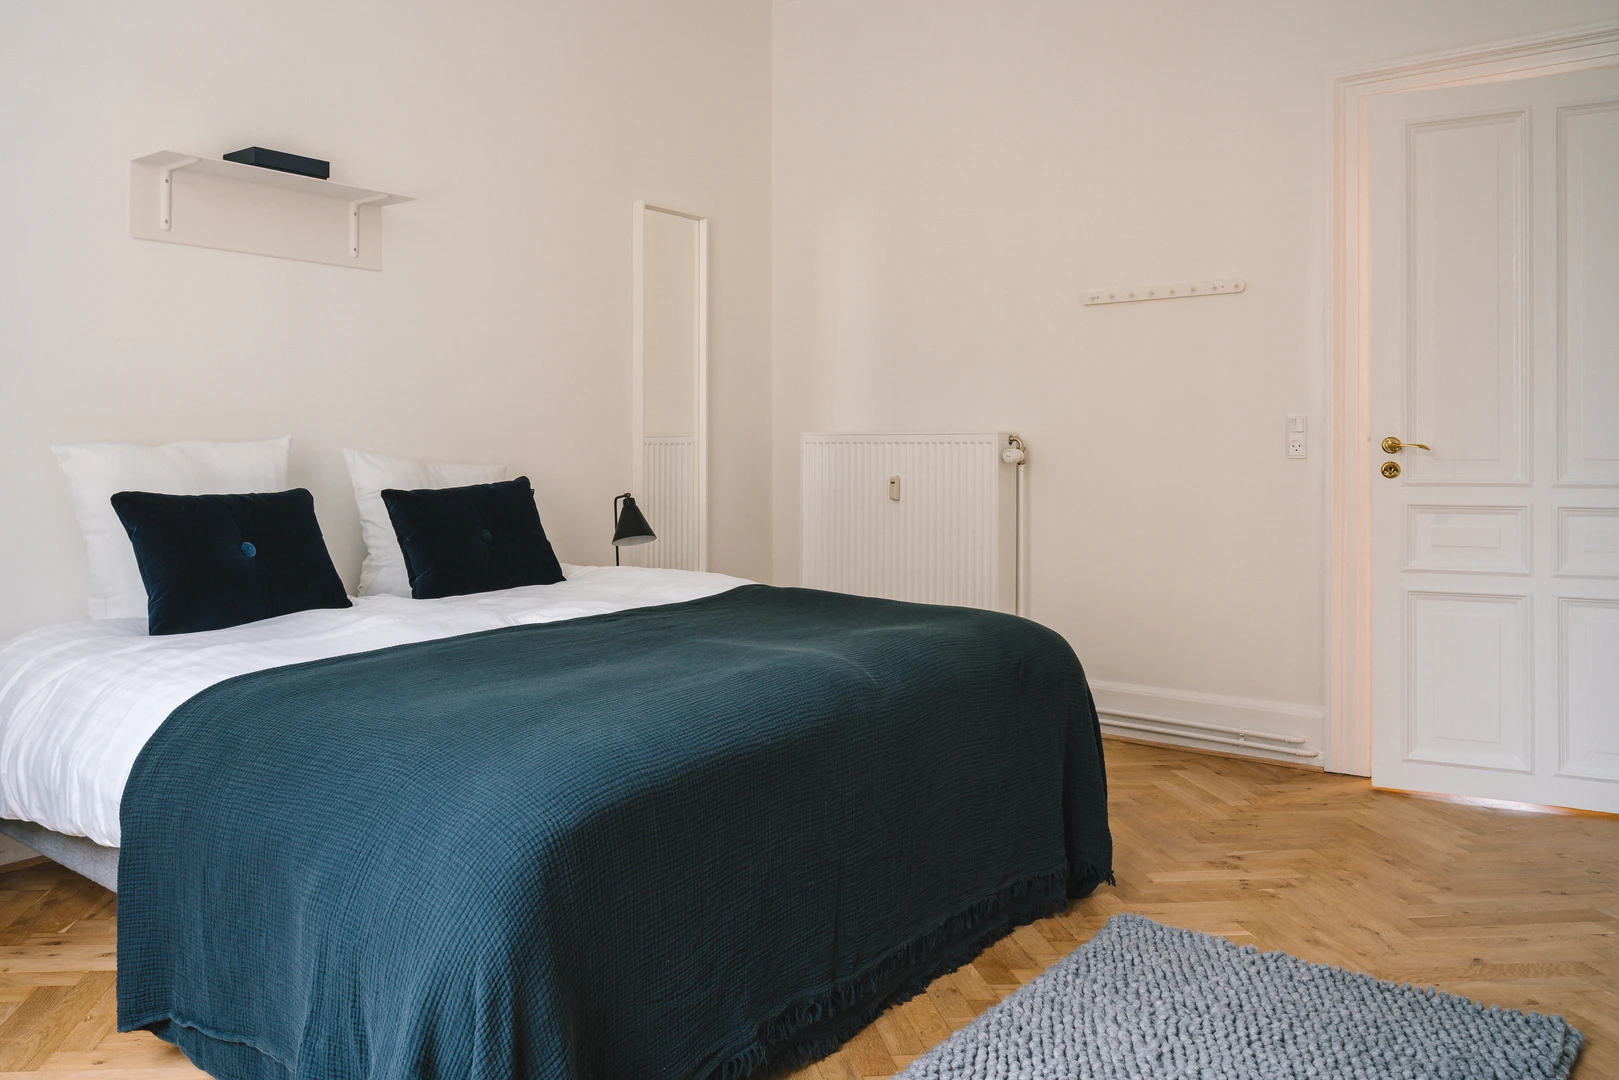 Alquiler de habitaciones por meses en københavn